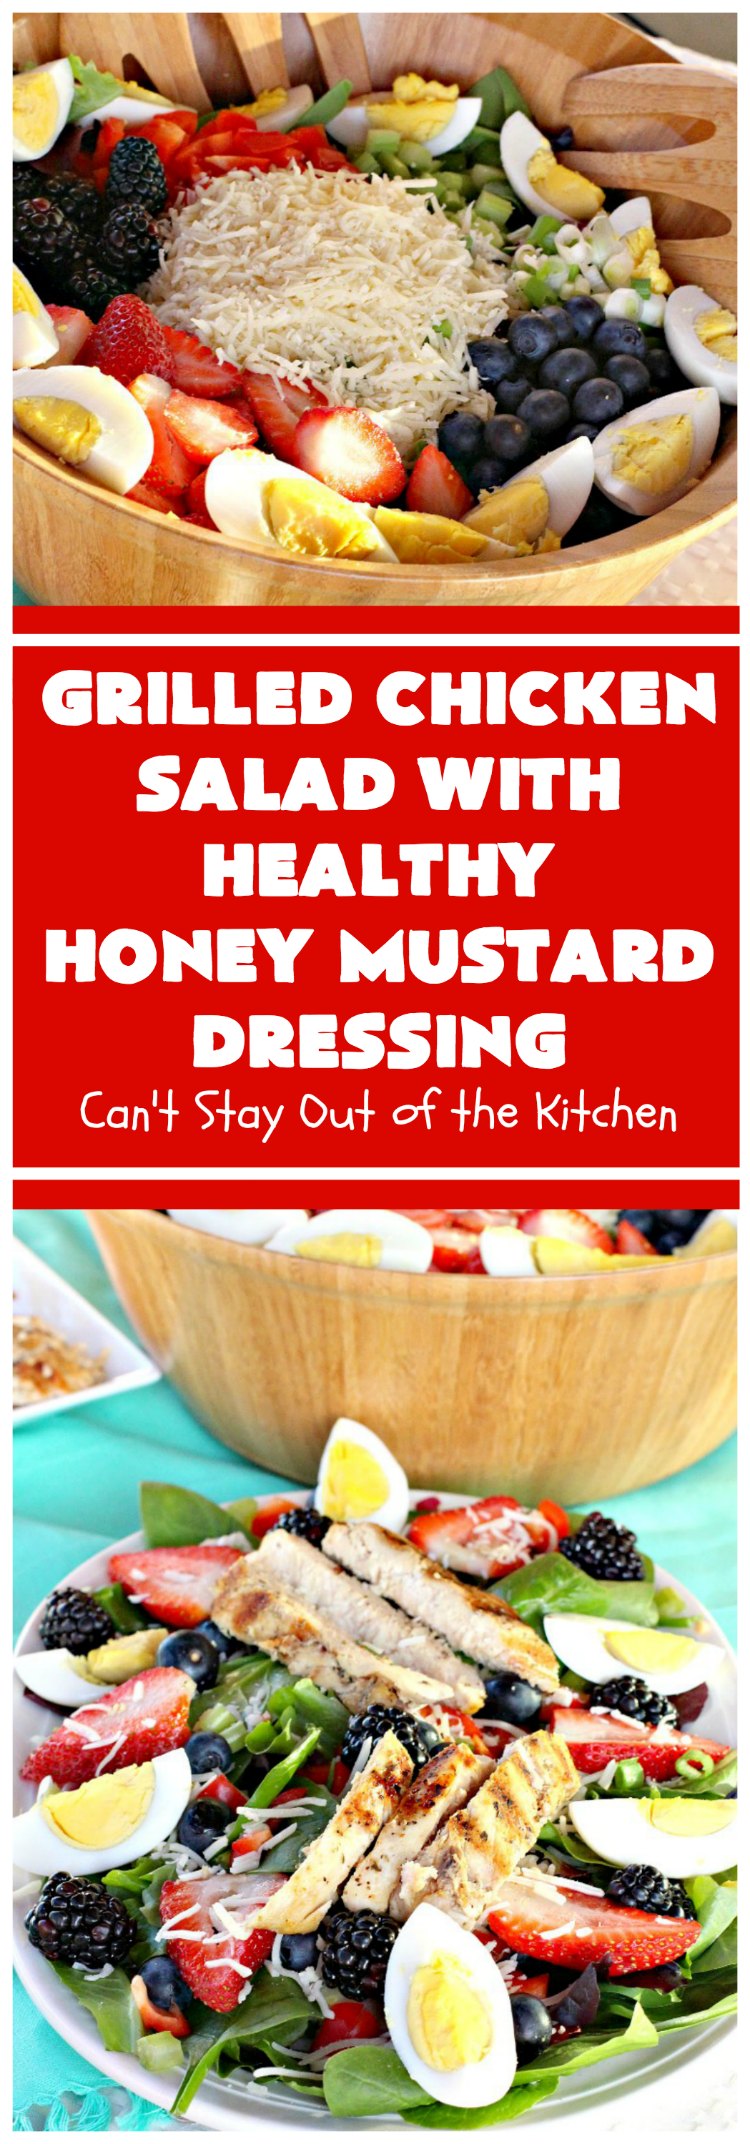 https://cantstayoutofthekitchen.com/2014/01/10/grilled-chicken-salad-healthy-honey-mustard-dressing/